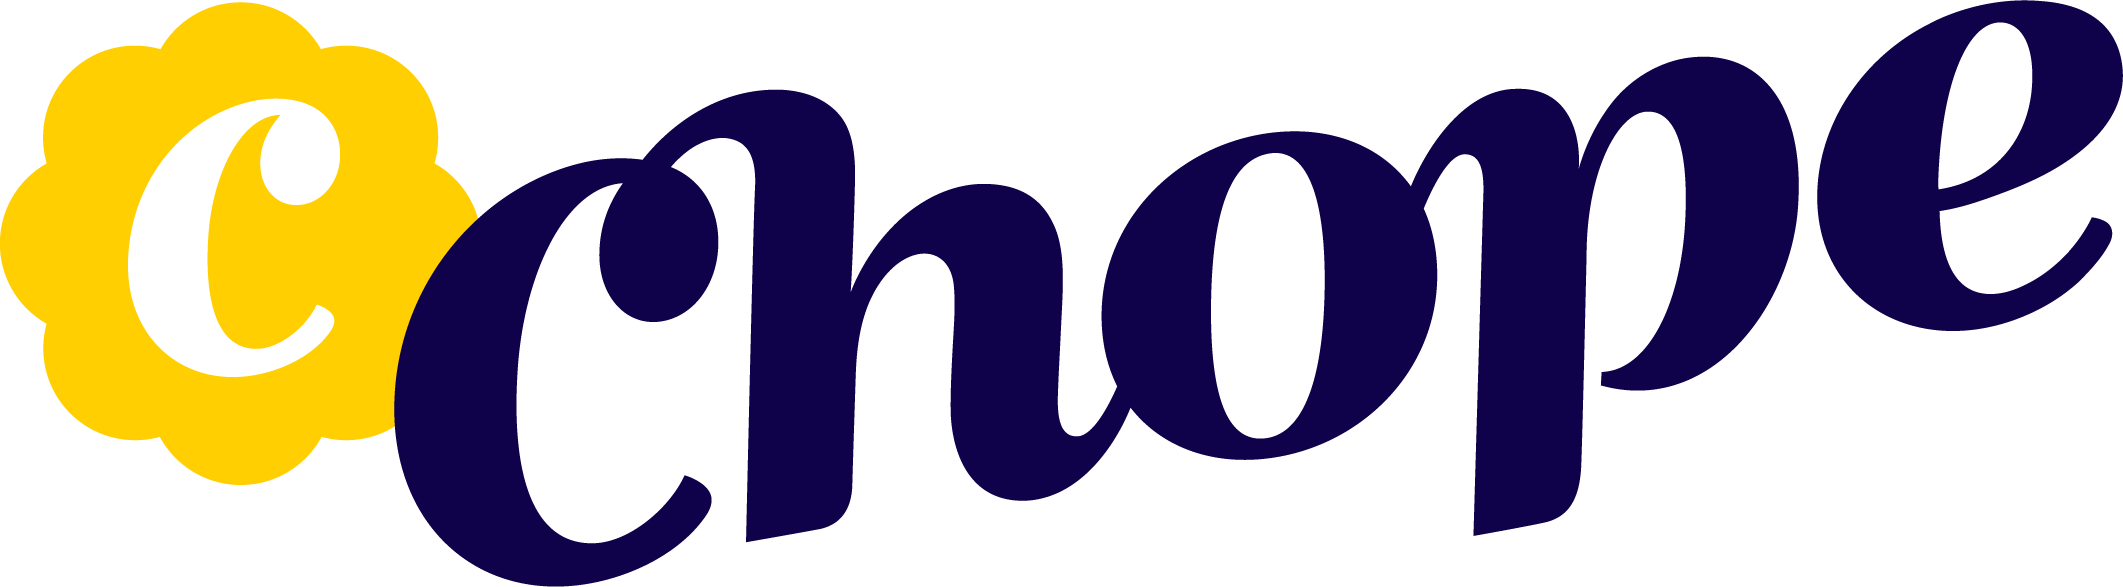 logo chope